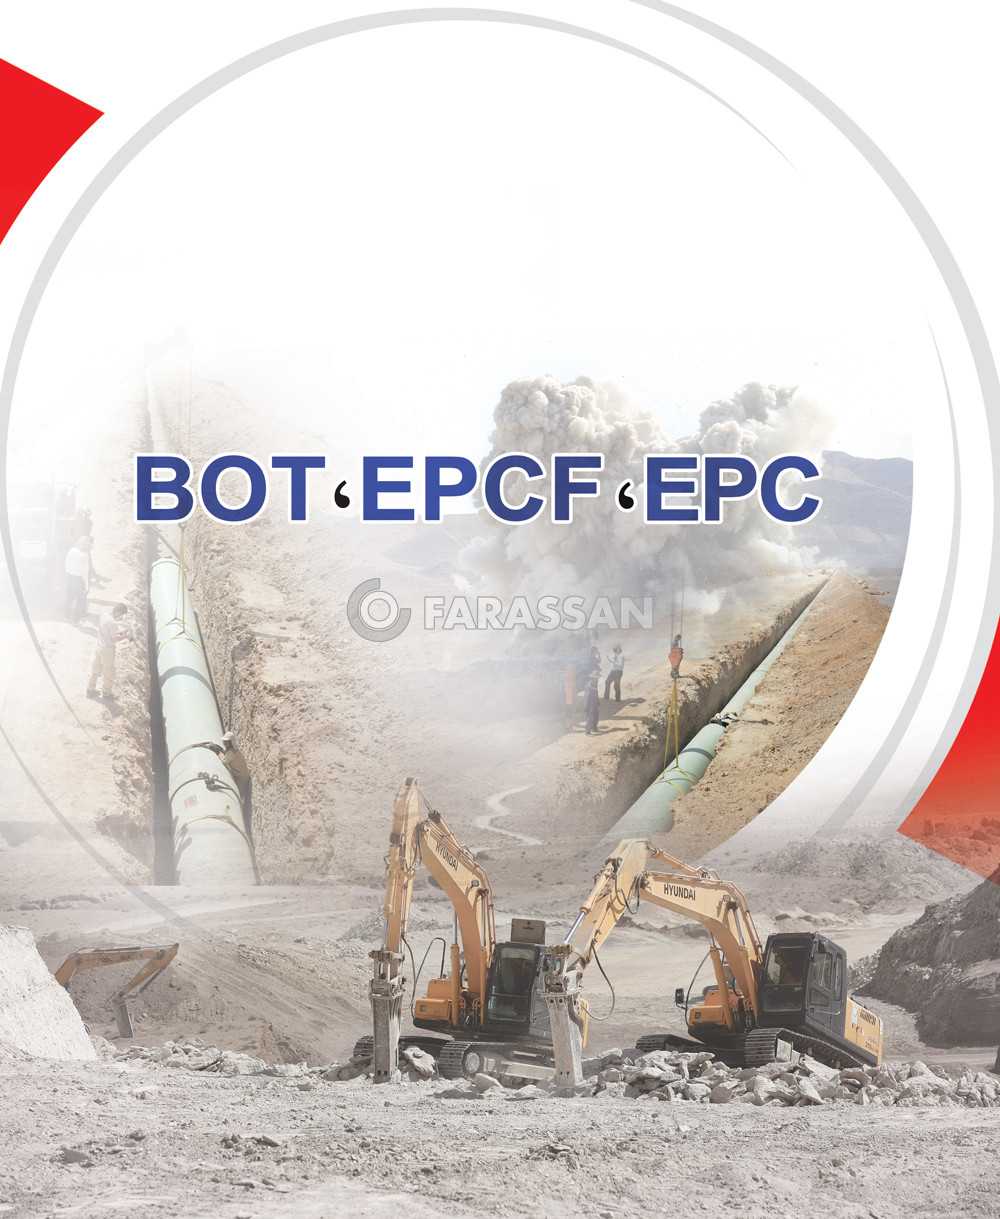 پروژه های شاخص BOT,,EPCF,EPC شرکت تولیدی صنعتی فراسان